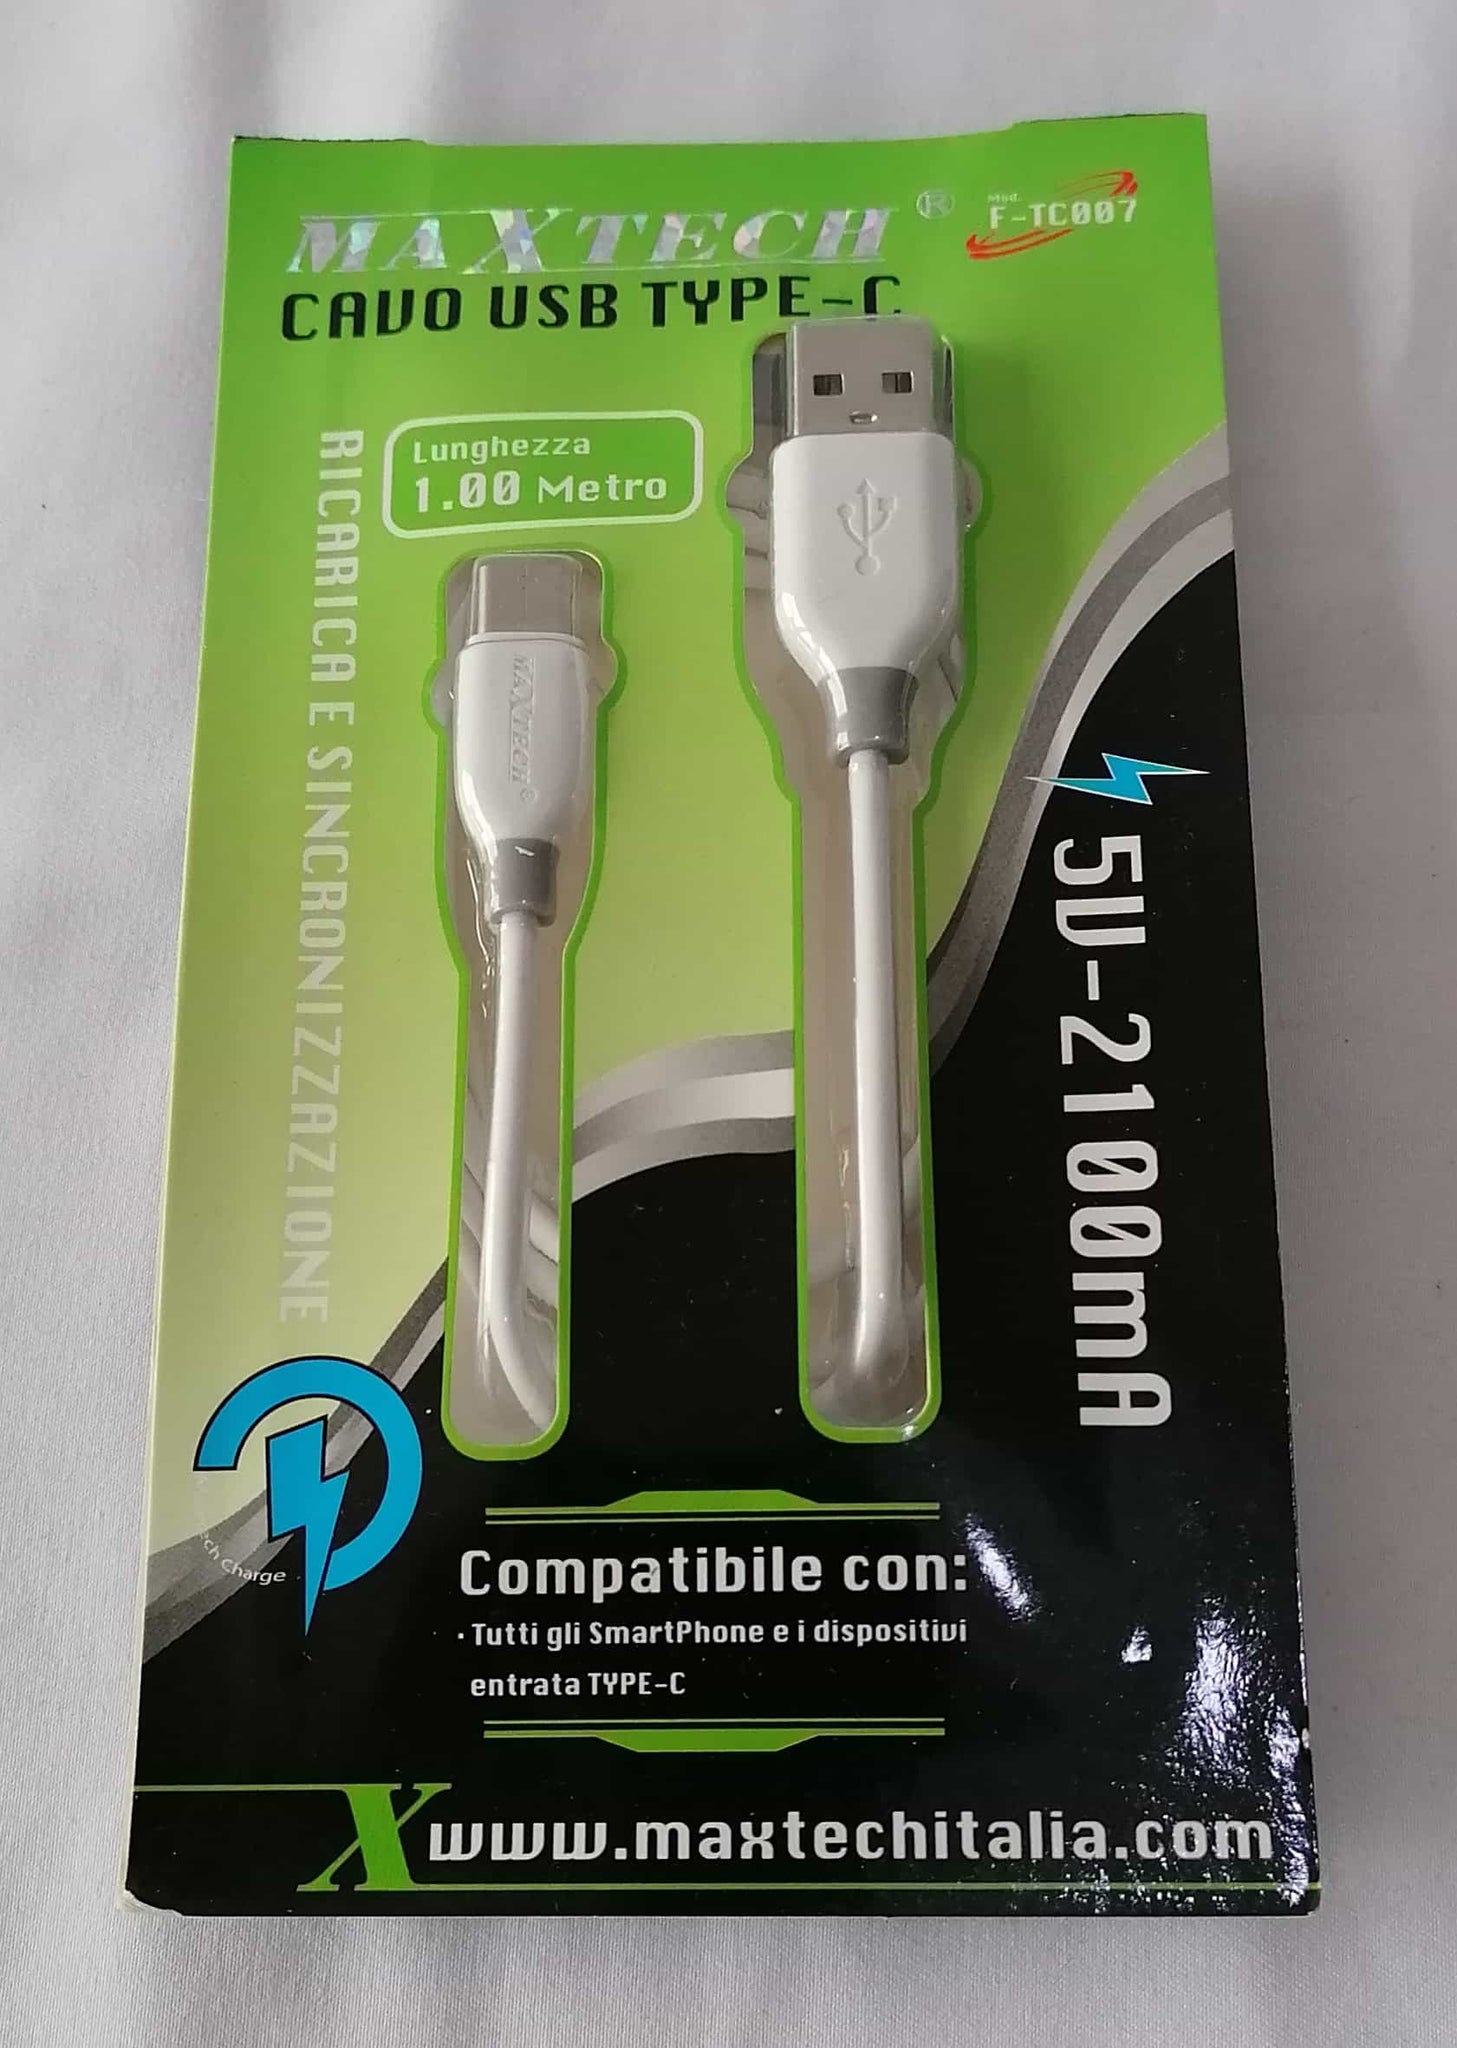 Câble Xiaomi Original USB-C / USB, Charge et Synchronisation 1m - Blanc -  Français